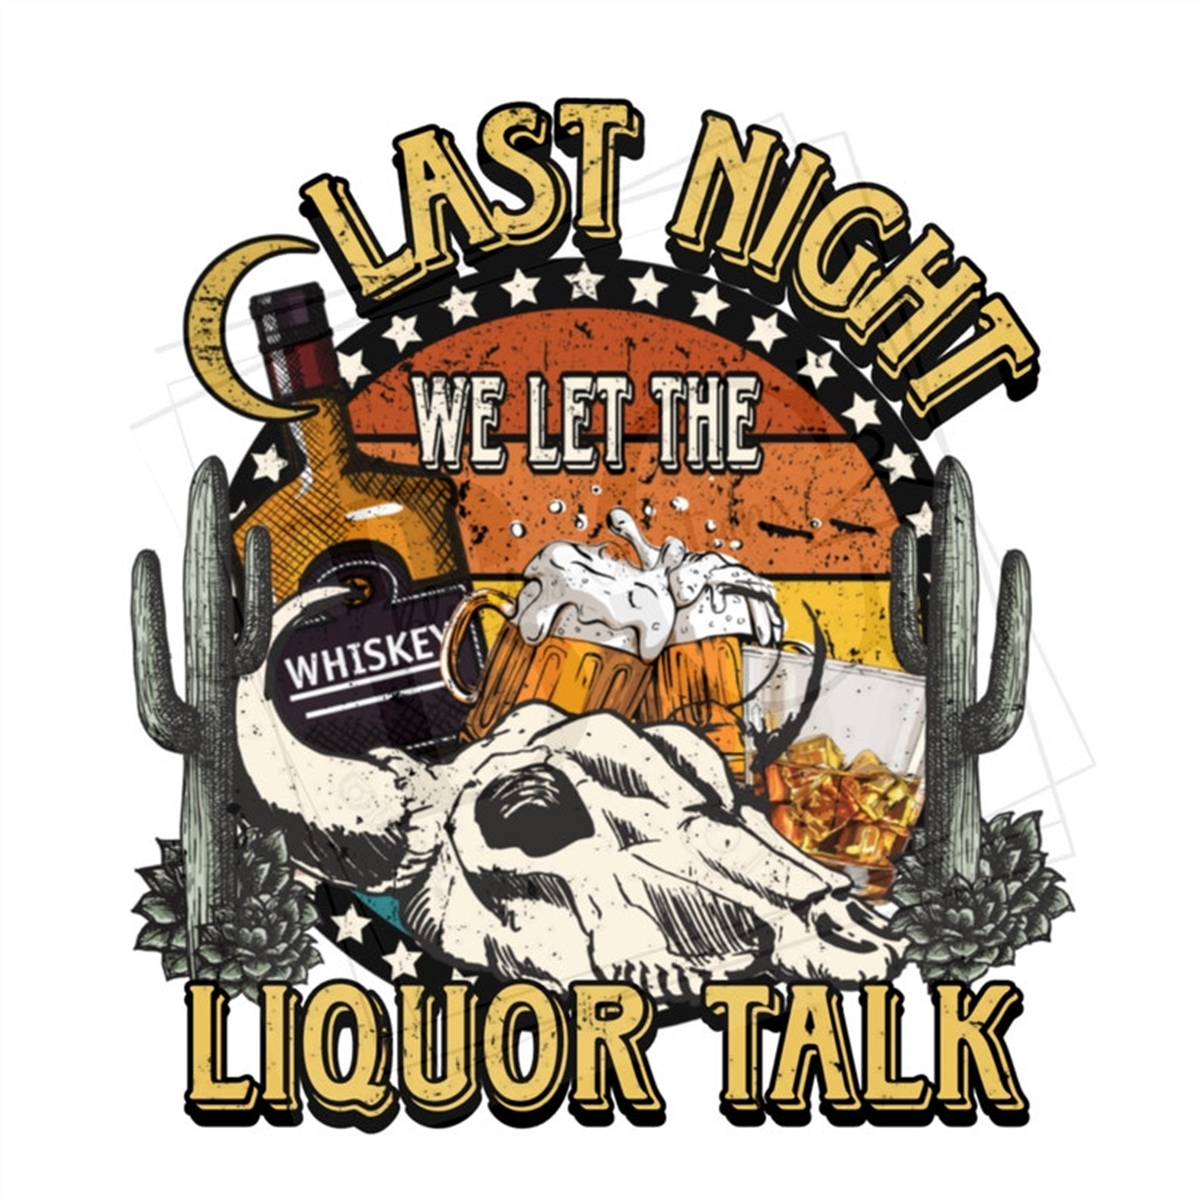 last-night-we-let-the-liquor-talk-png-morgan-wallen-digital-image-1